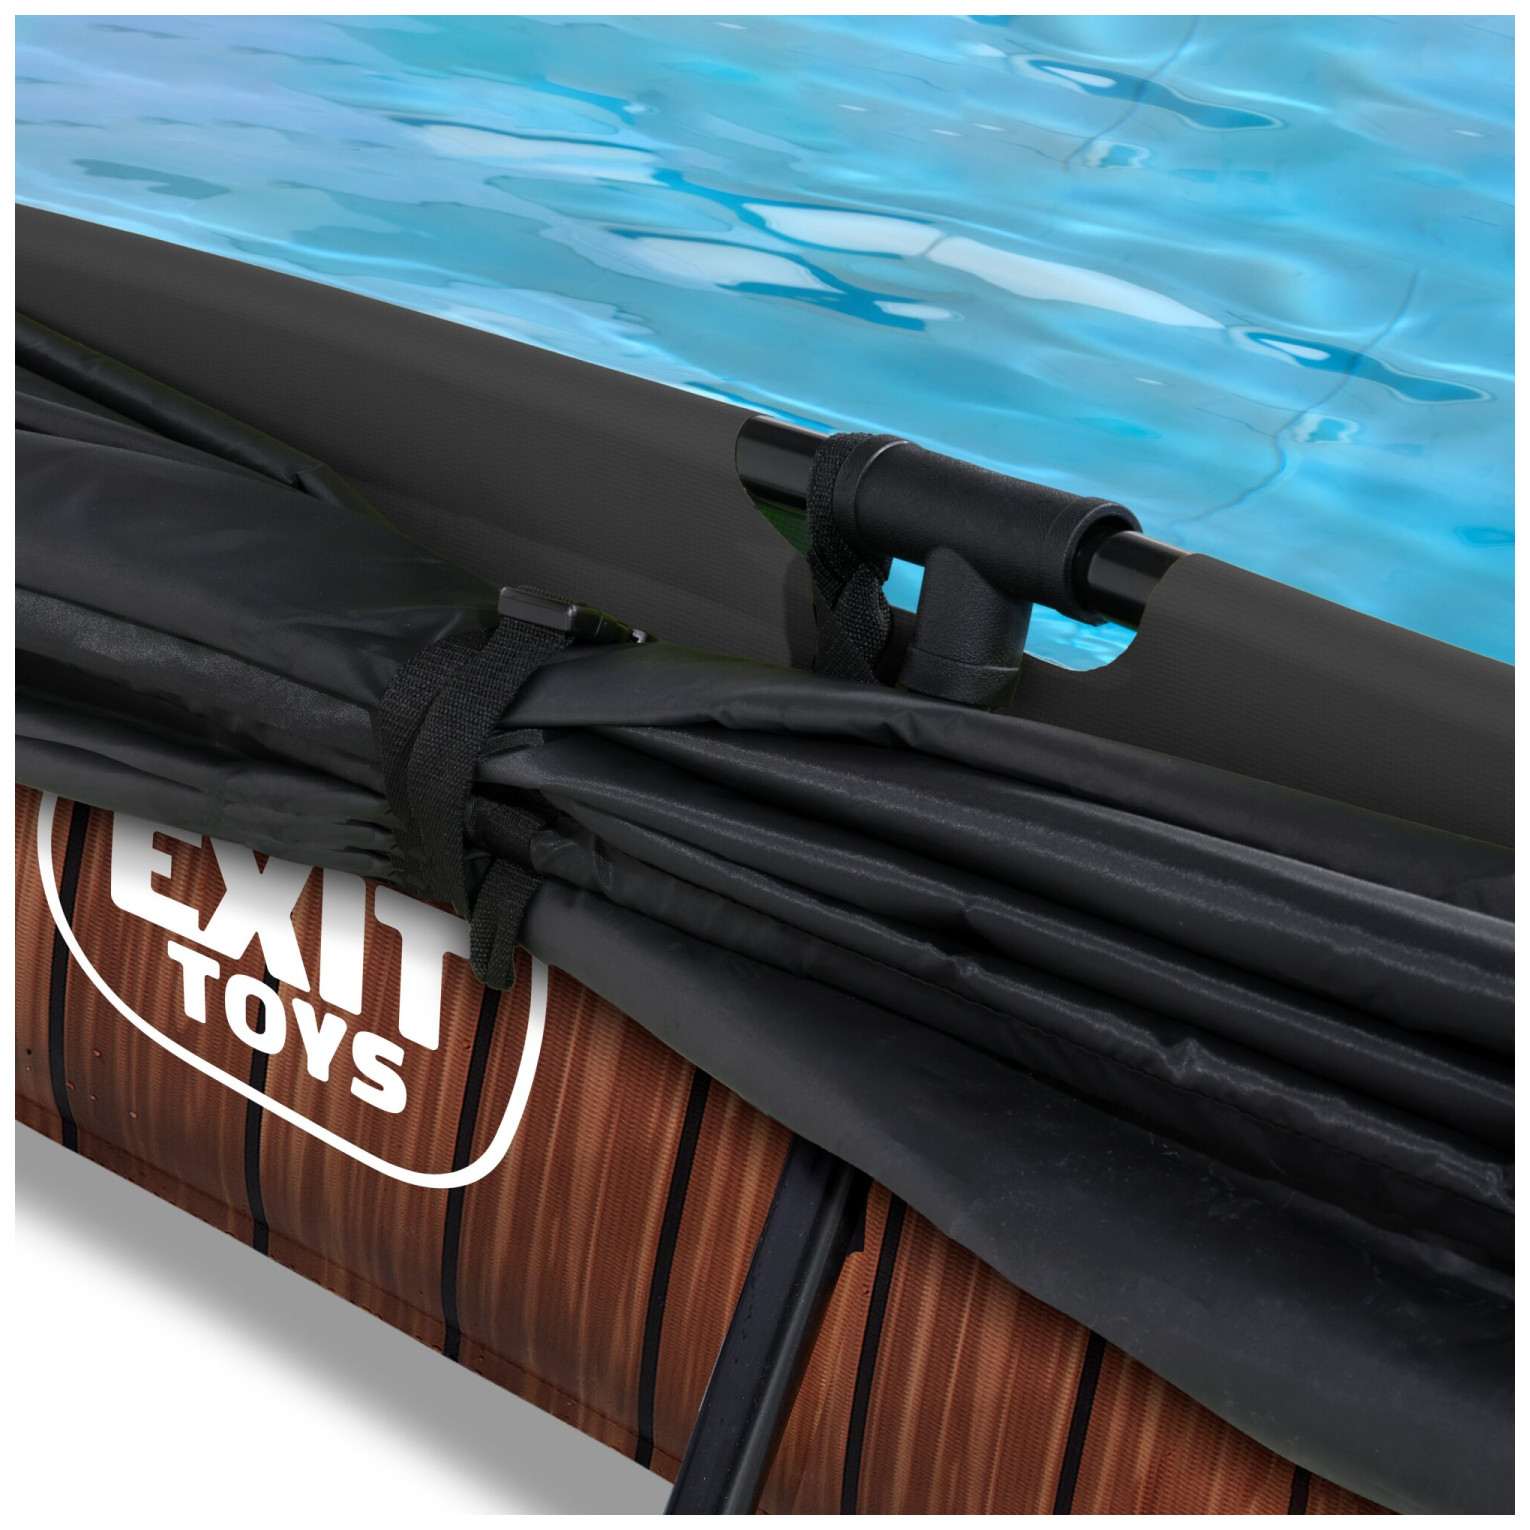 EXIT Wood zwembad 300x200x65cm met filterpomp en schaduwdoek